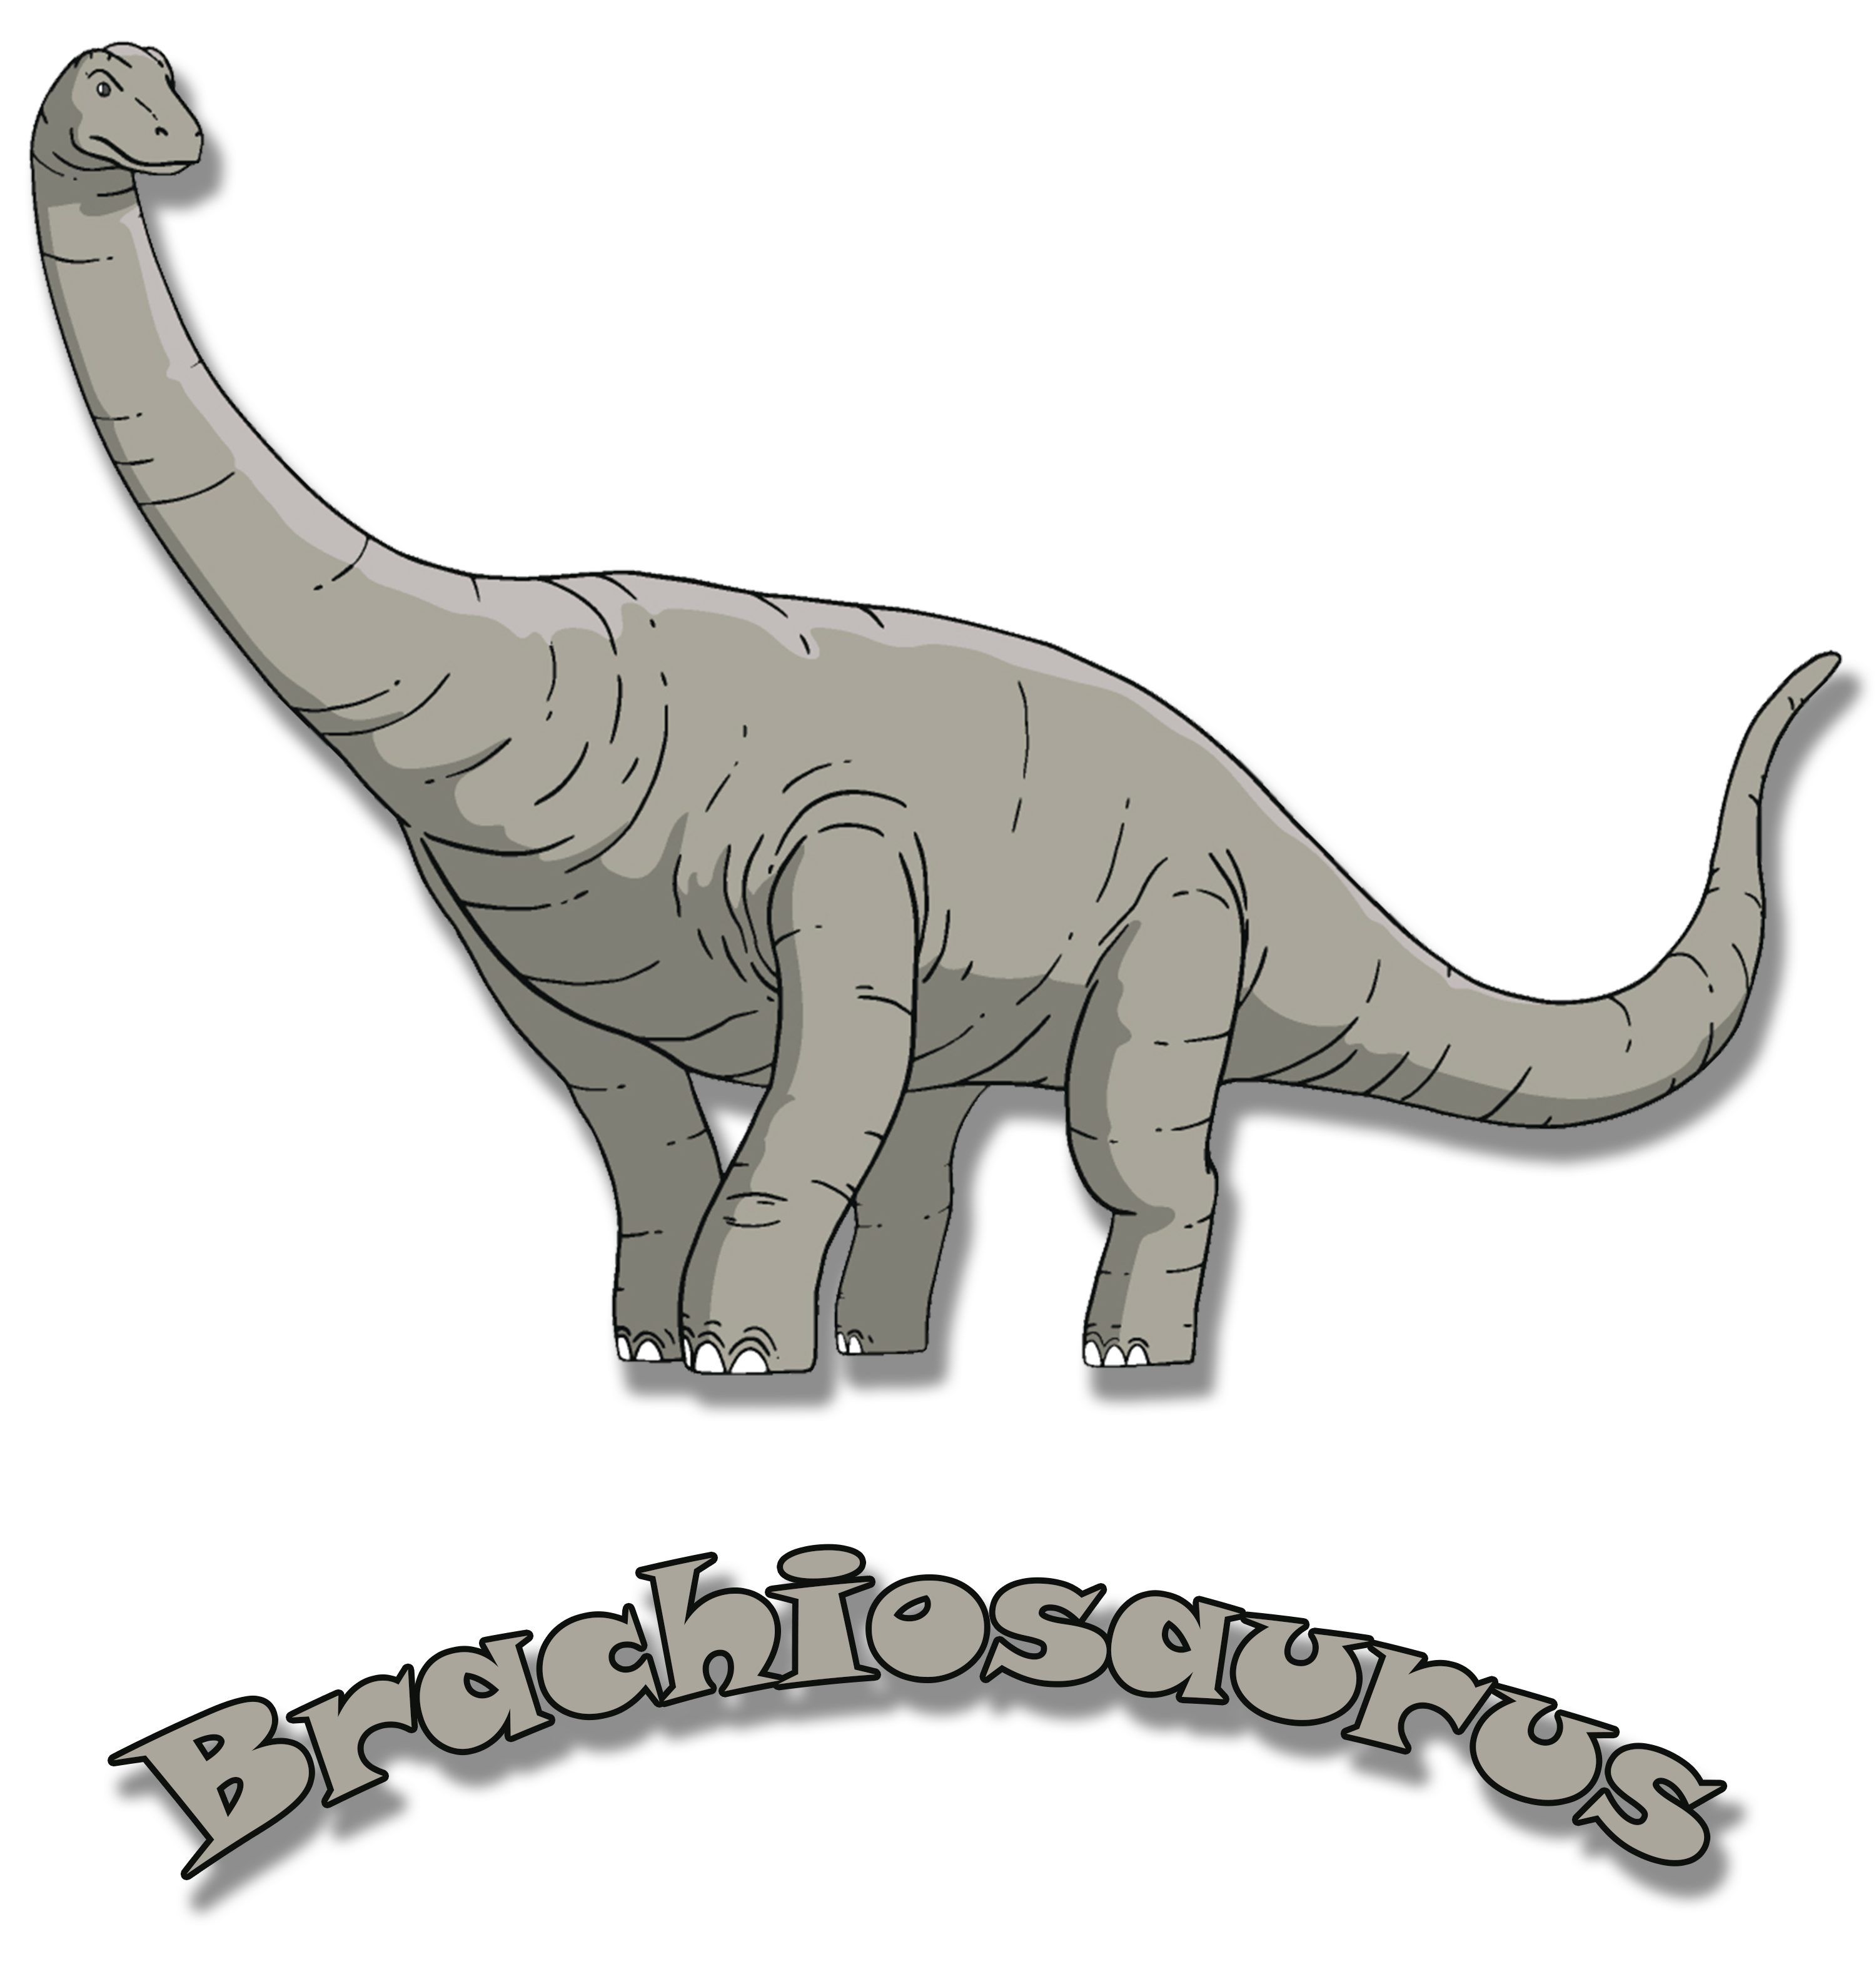 MyDesign24 Print-Shirt bedrucktes Kinder rot, blau, Brachiosaurus i66 mit T-Shirt weiß, schwarz, Dino, mit Baumwollshirt